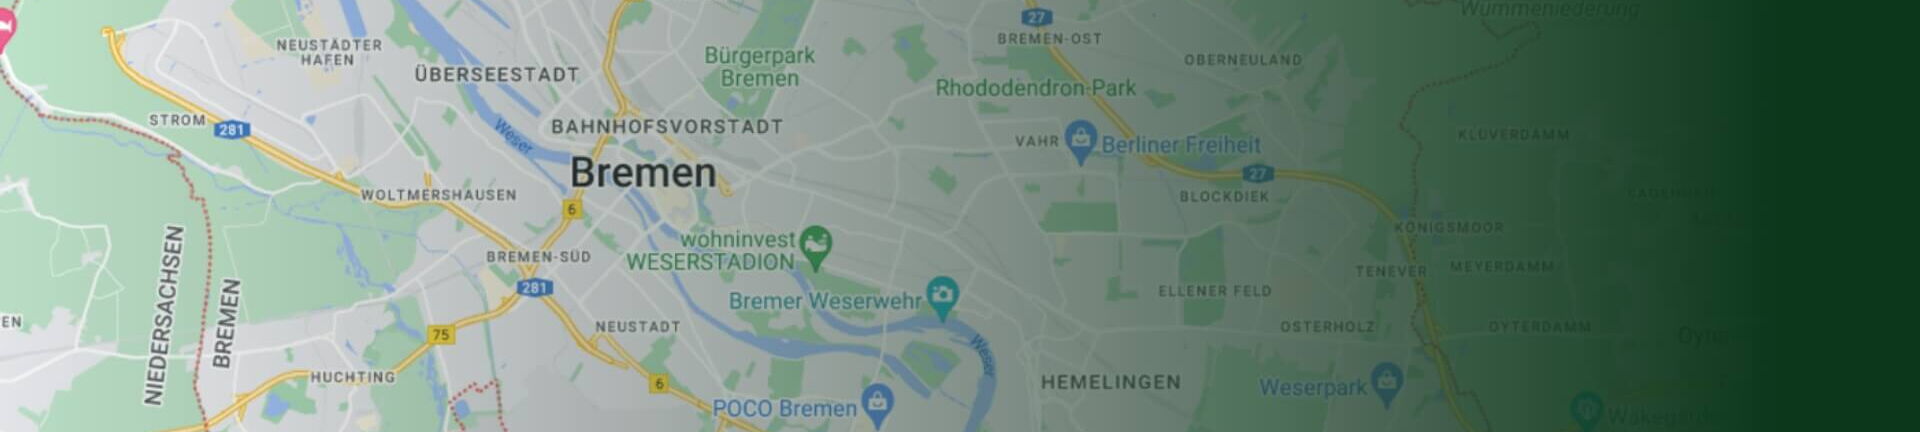 Kleiner Ausschnitt aus der Landkarte der Stadt Bremen mit dem Stadtkern im Zentrum